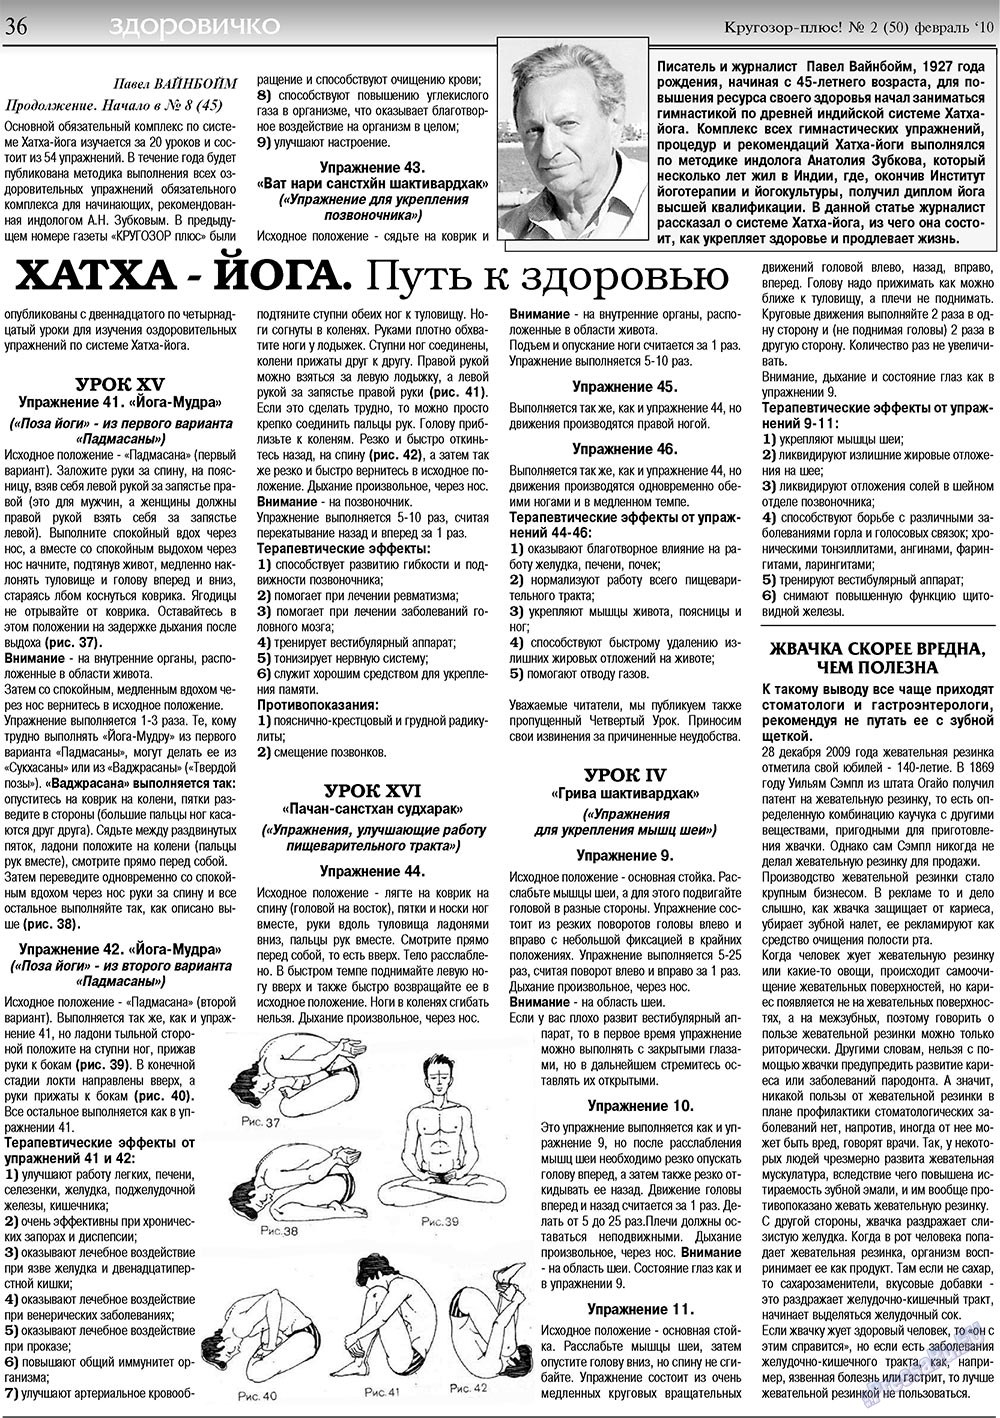 Кругозор плюс!, газета. 2010 №2 стр.36